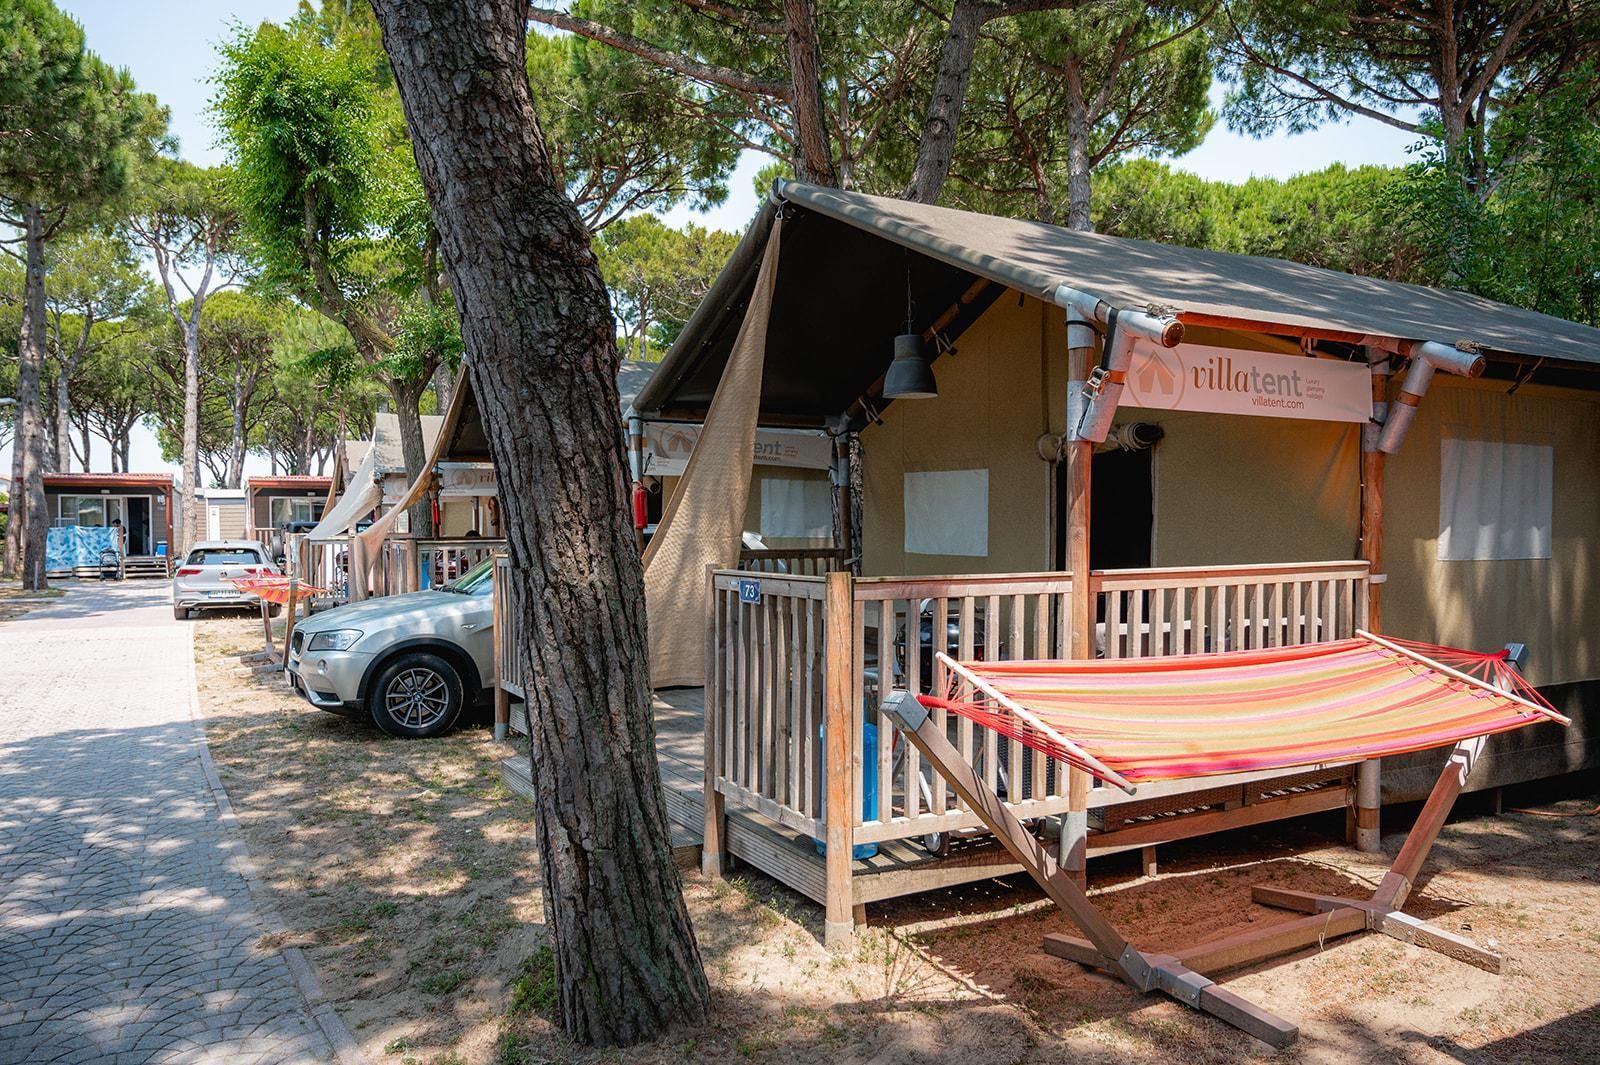 Camping village Cavallino | Villatent Luxe avec salle de bain privative 5 pers.